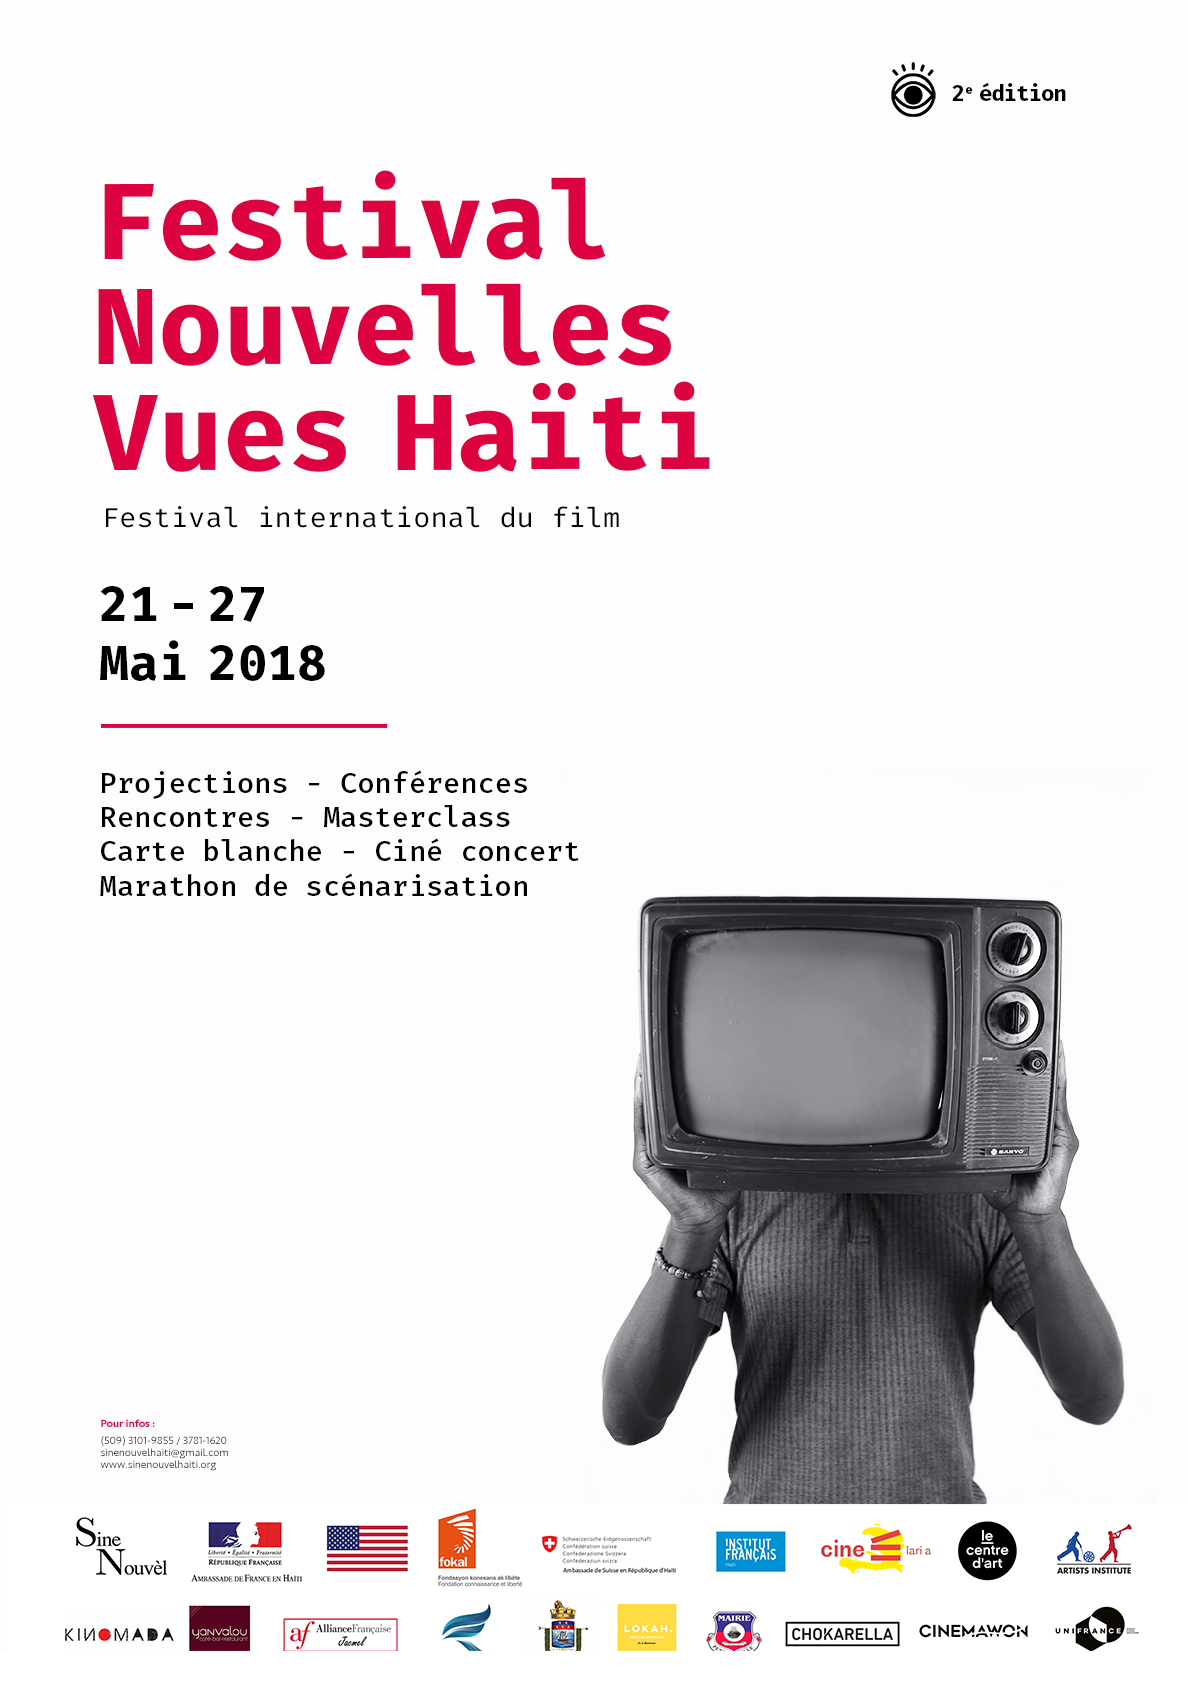 Affiche Officielle du Festival Nouvelles Vues Haiti